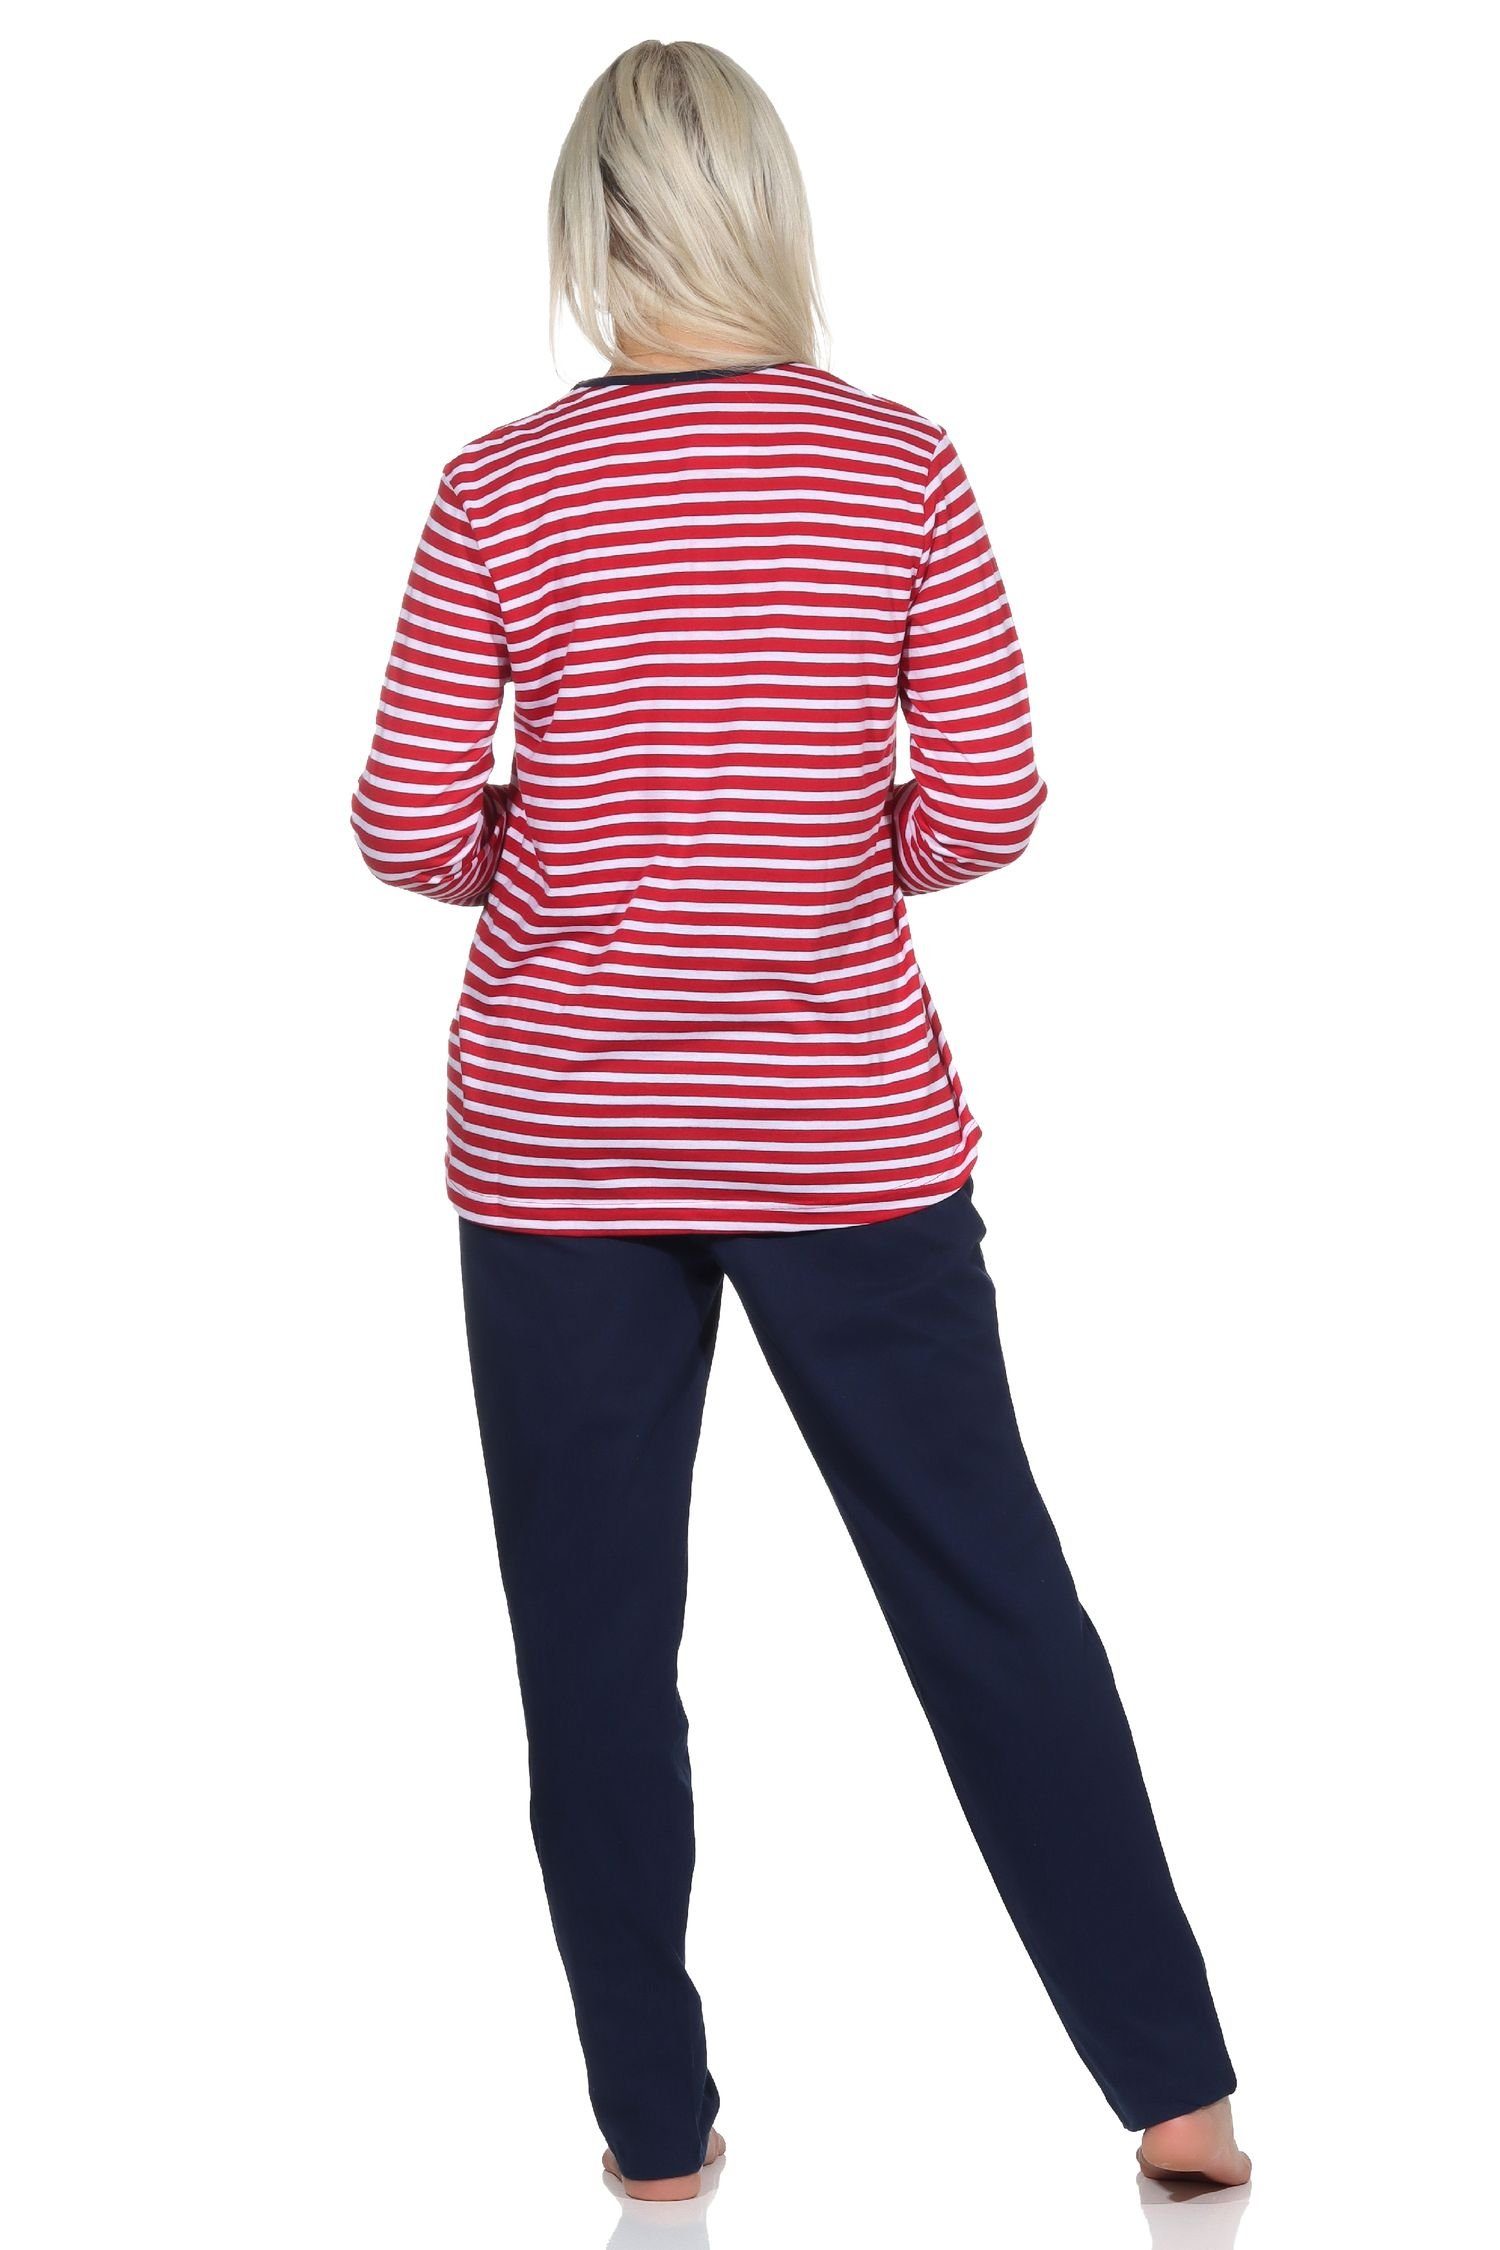 als Motiv Anker Damen rot Schlafanzug in Pyjama und maritimer Normann Streifenoptik